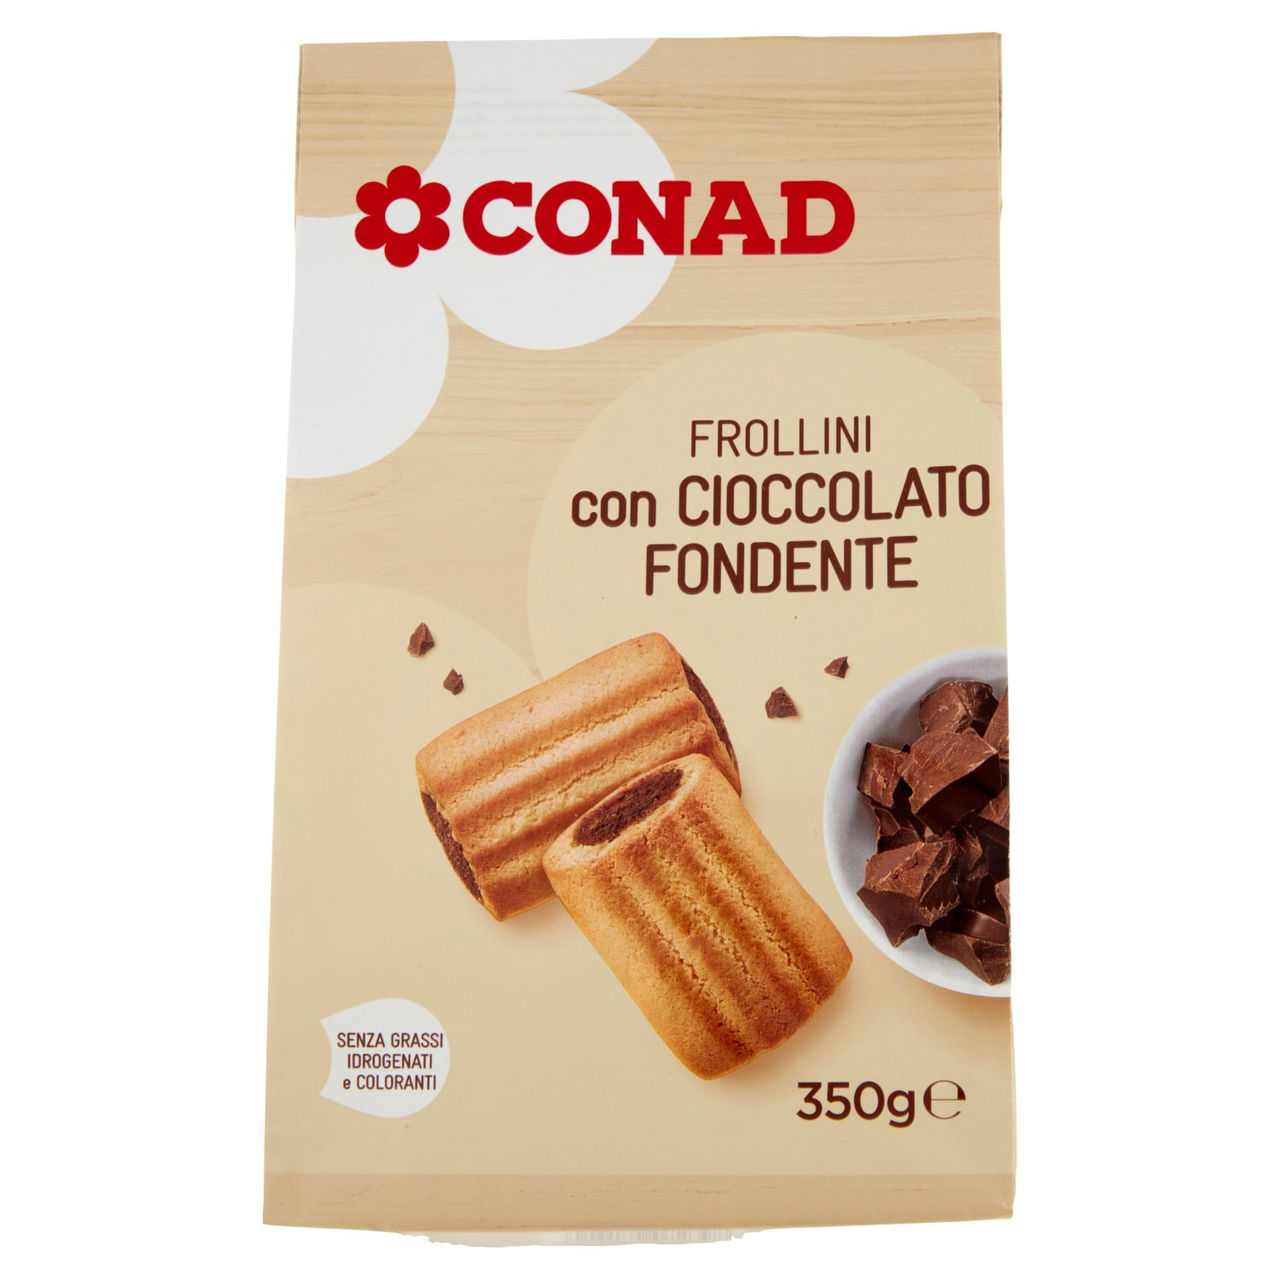 Frollini con cioccolato fondente Conad online